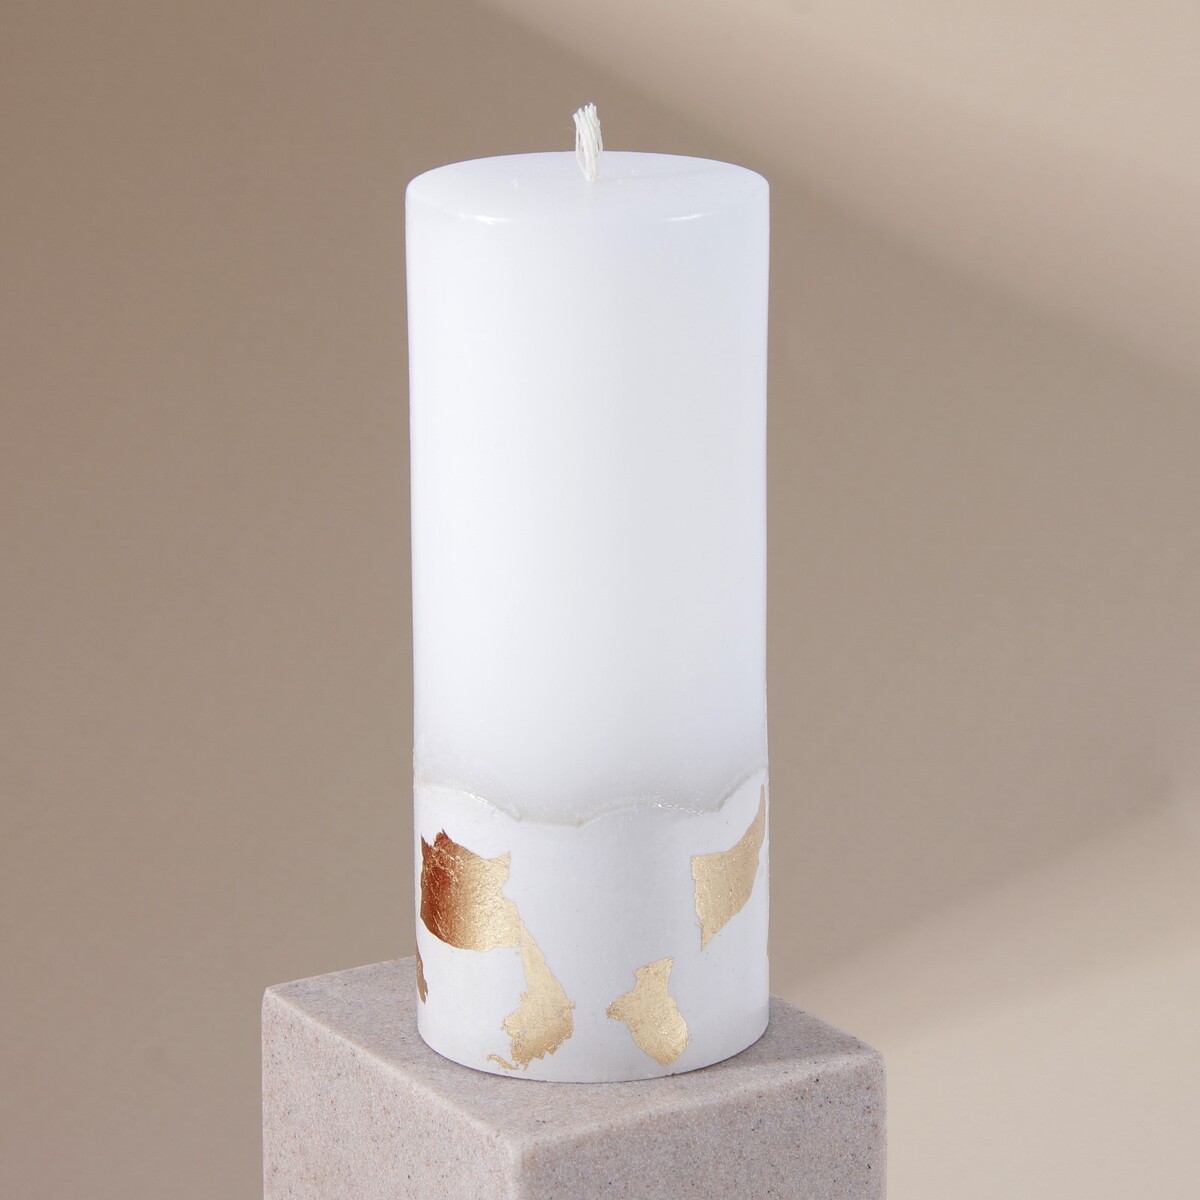 Свеча интерьерная белая с бетоном (поталь), 15 х 6 см свеча интерьерная белая с бетоном 14 х 5 см